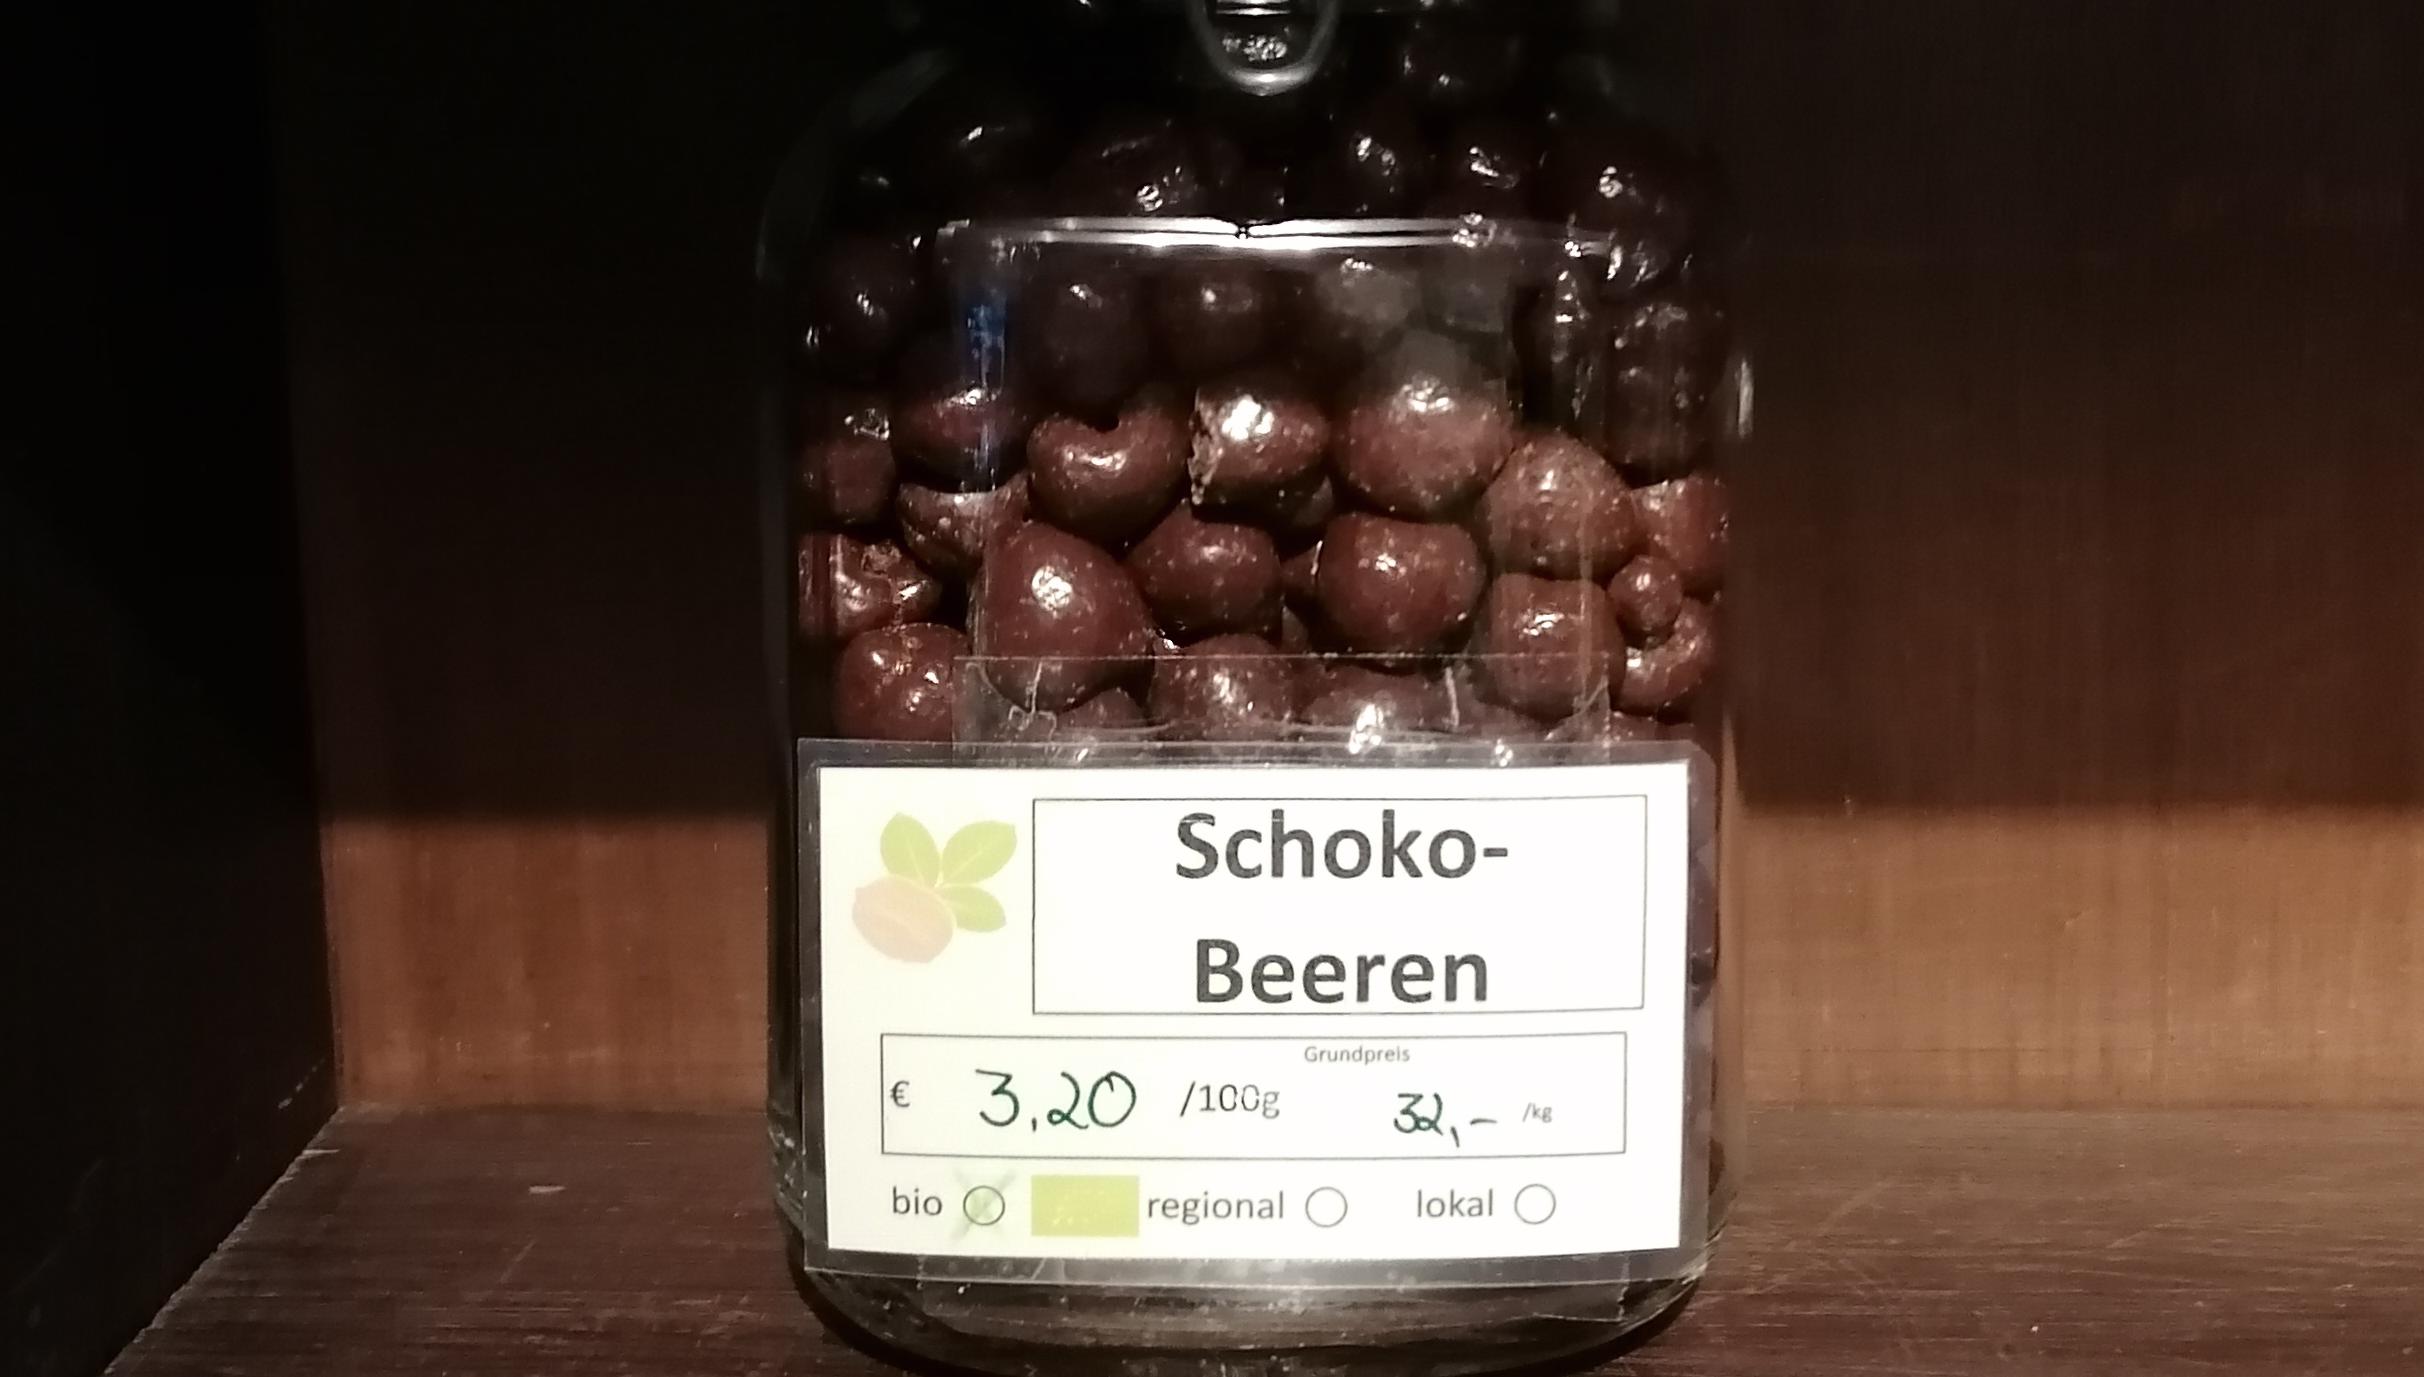 Schoko-Beeren